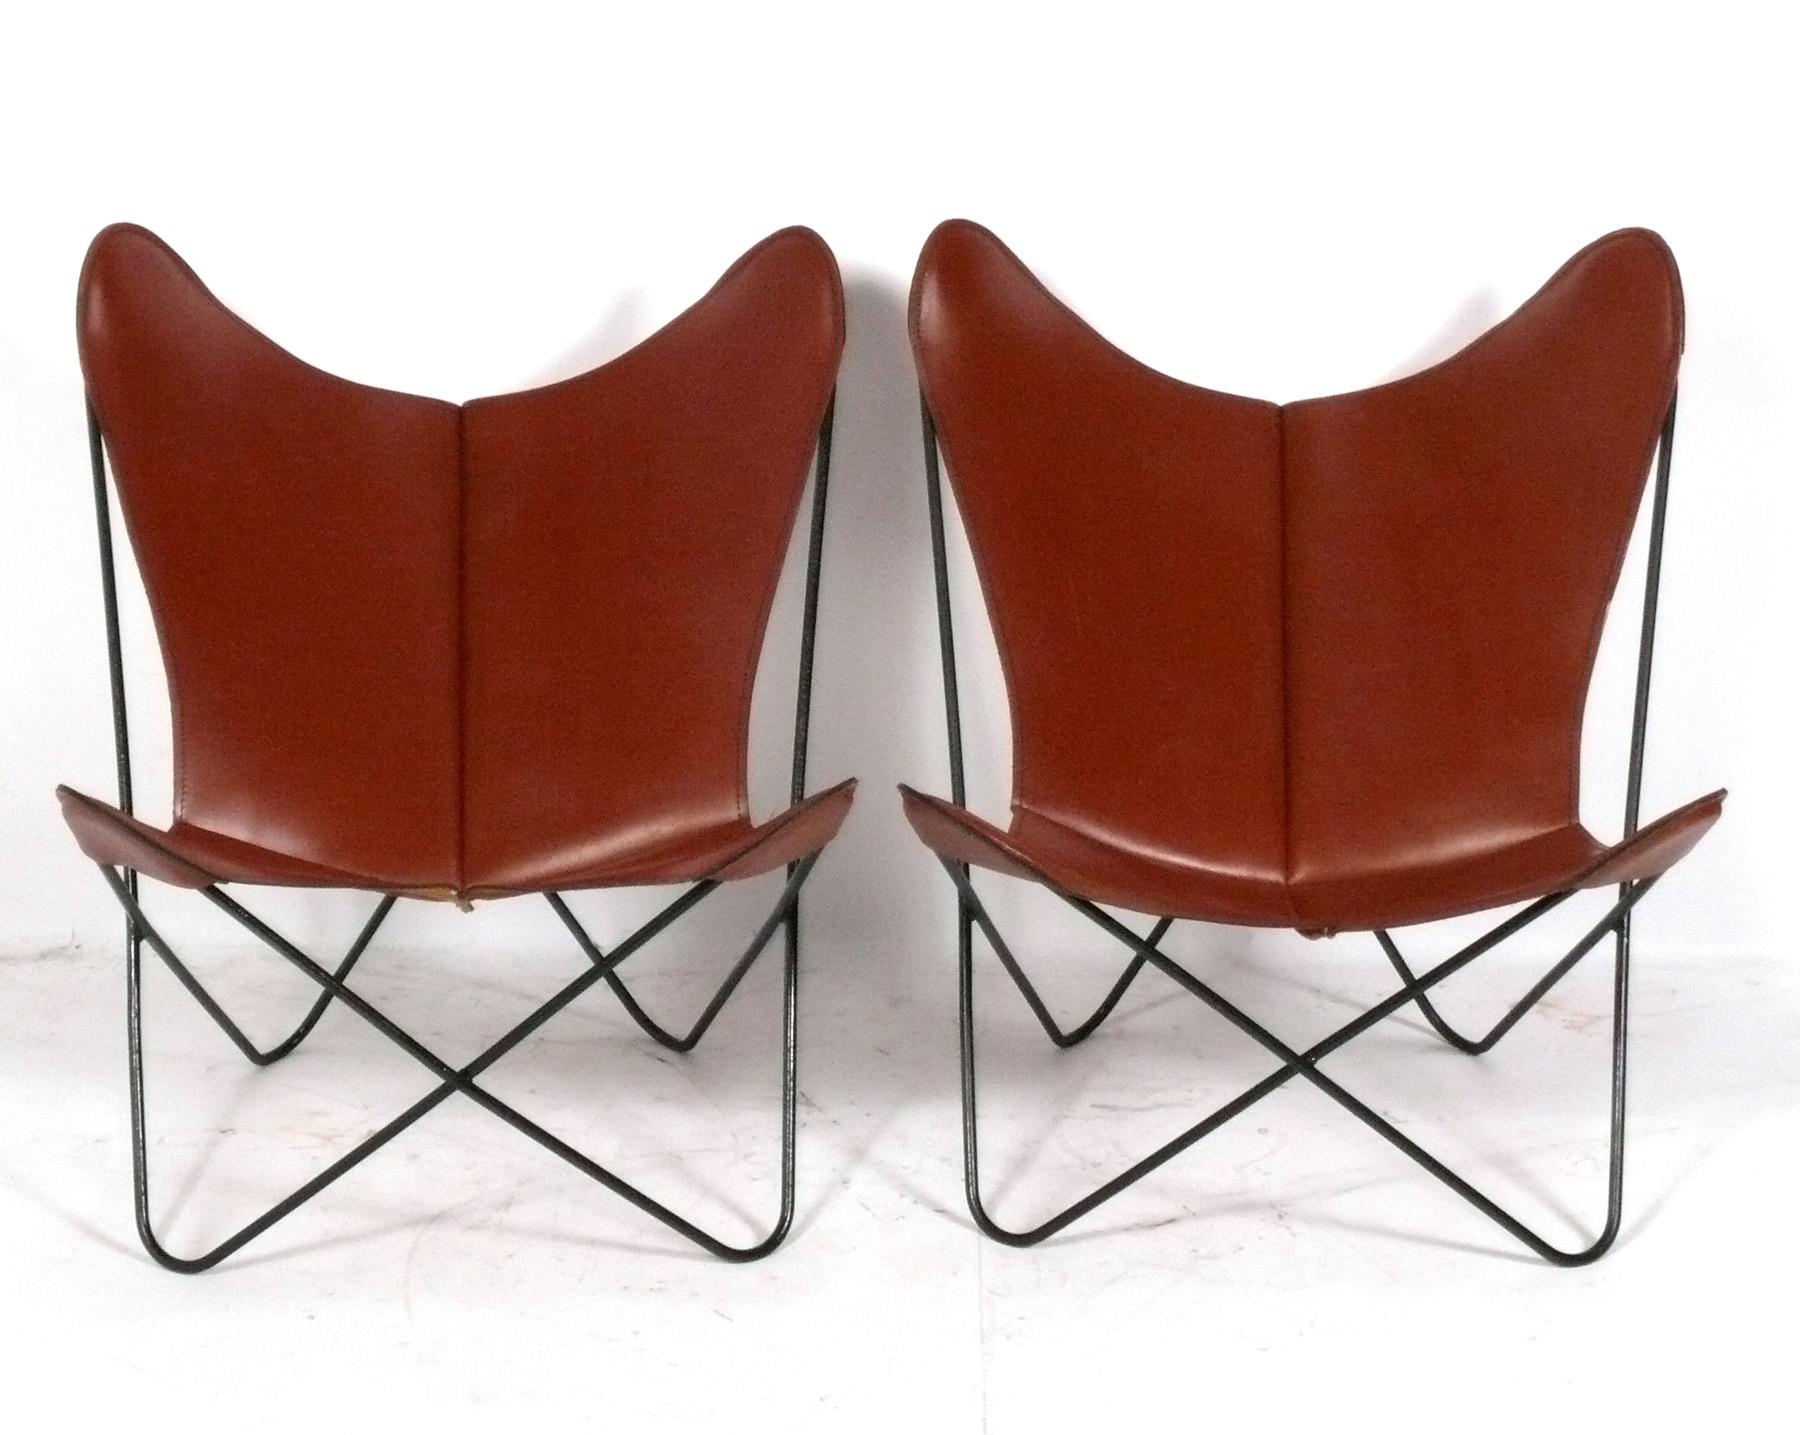 Paire de chaises longues papillon sculpturales conçues par Jorge Ferrari-Hardoy, vers les années 1960. Rarement vues dans leur cuir cognac d'origine, ces chaises ont une superbe patine qui ne s'acquiert qu'avec l'âge. Il est cassé comme votre gant